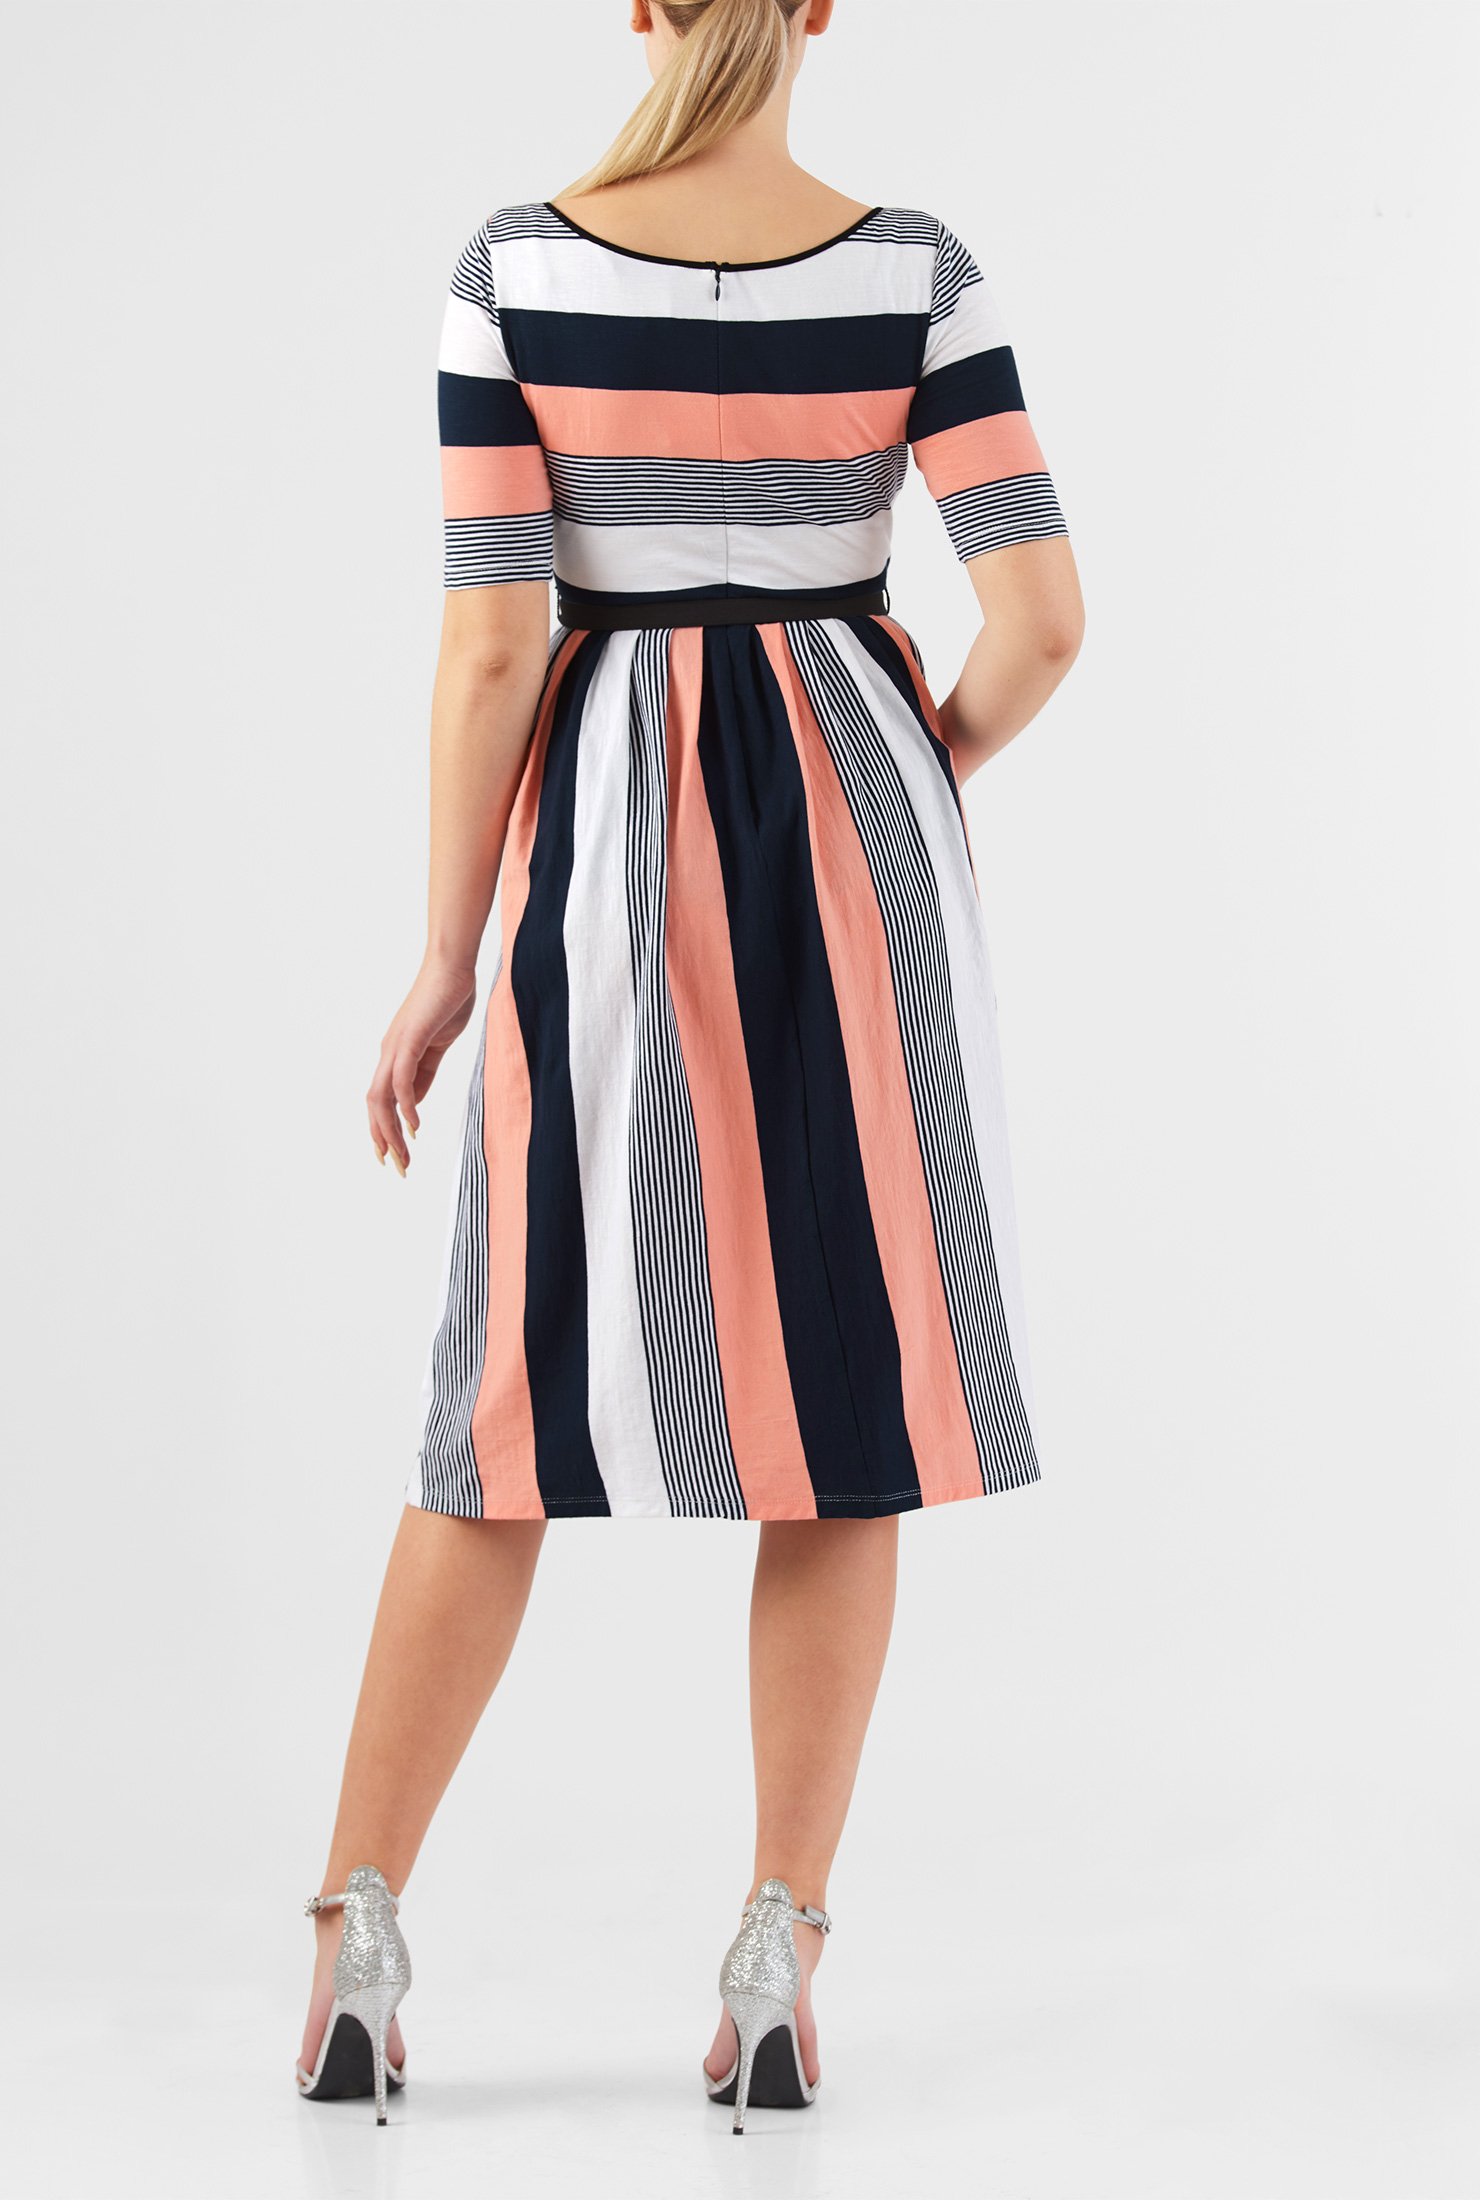 Shop Stripe cotton knit belted dress | eShakti